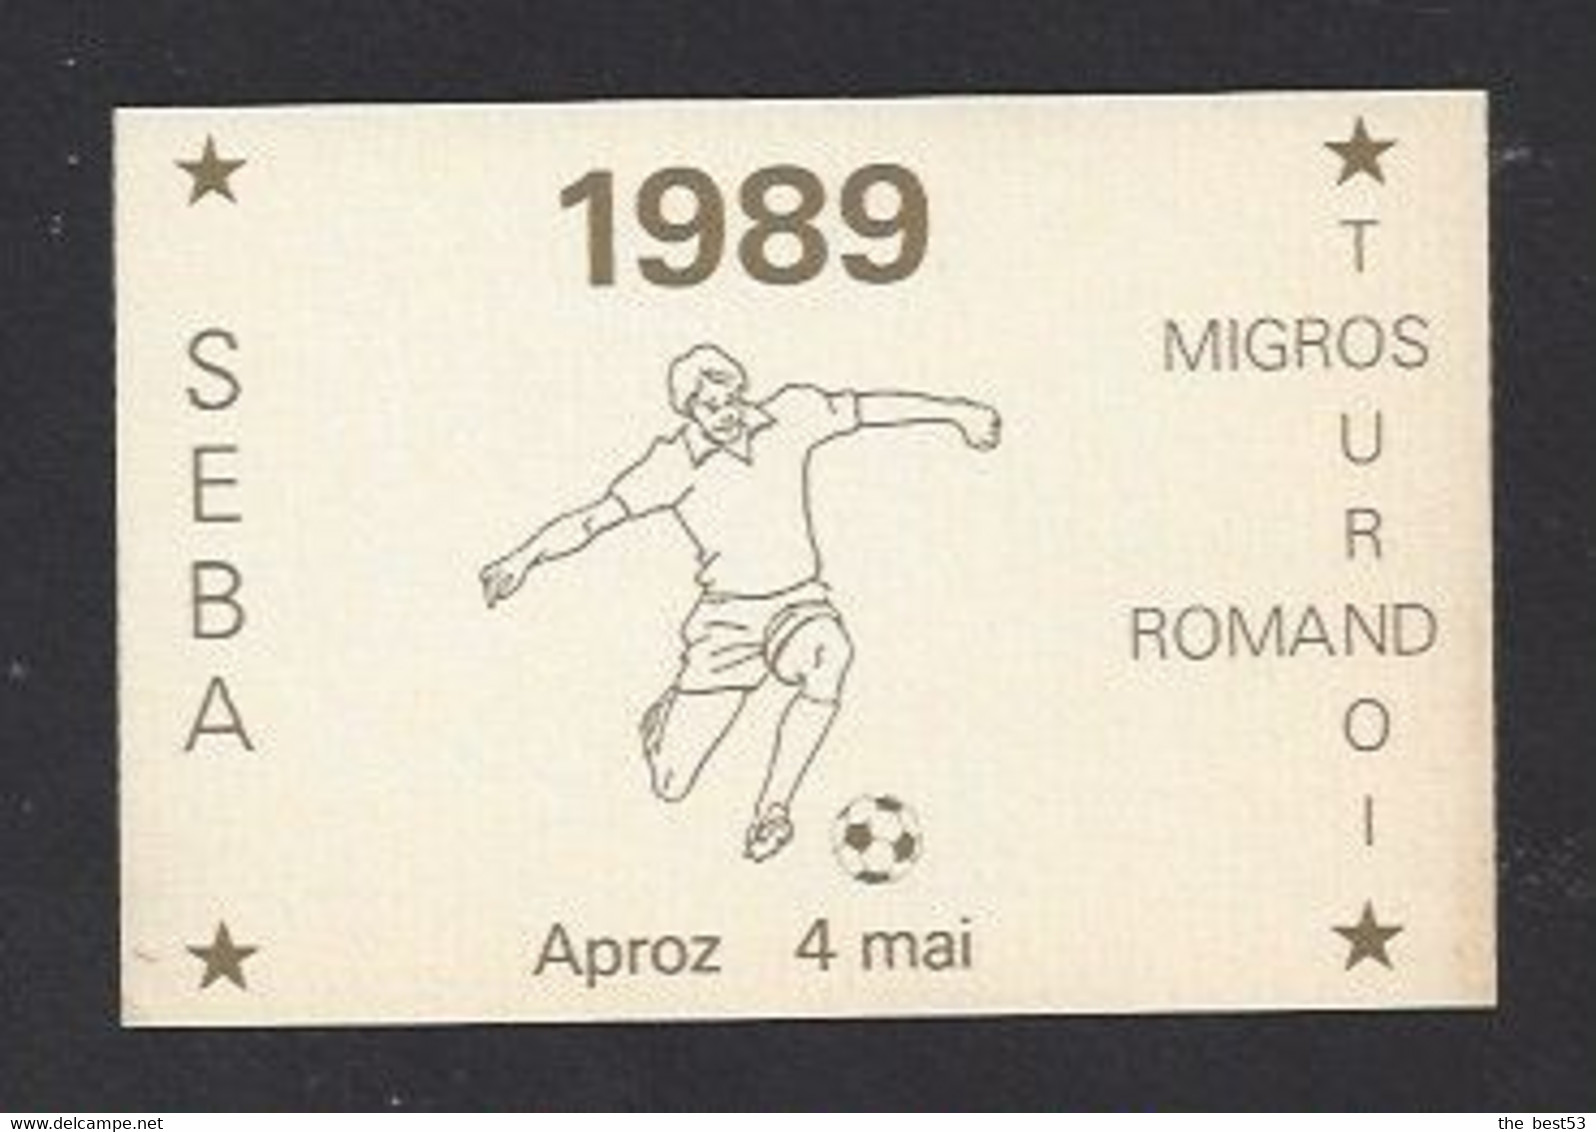 Etiquette De Vin -  Seba  -  Migros Tournois Romand 4 Mai 1989   (suisse) -  Thème Foot - Fútbol